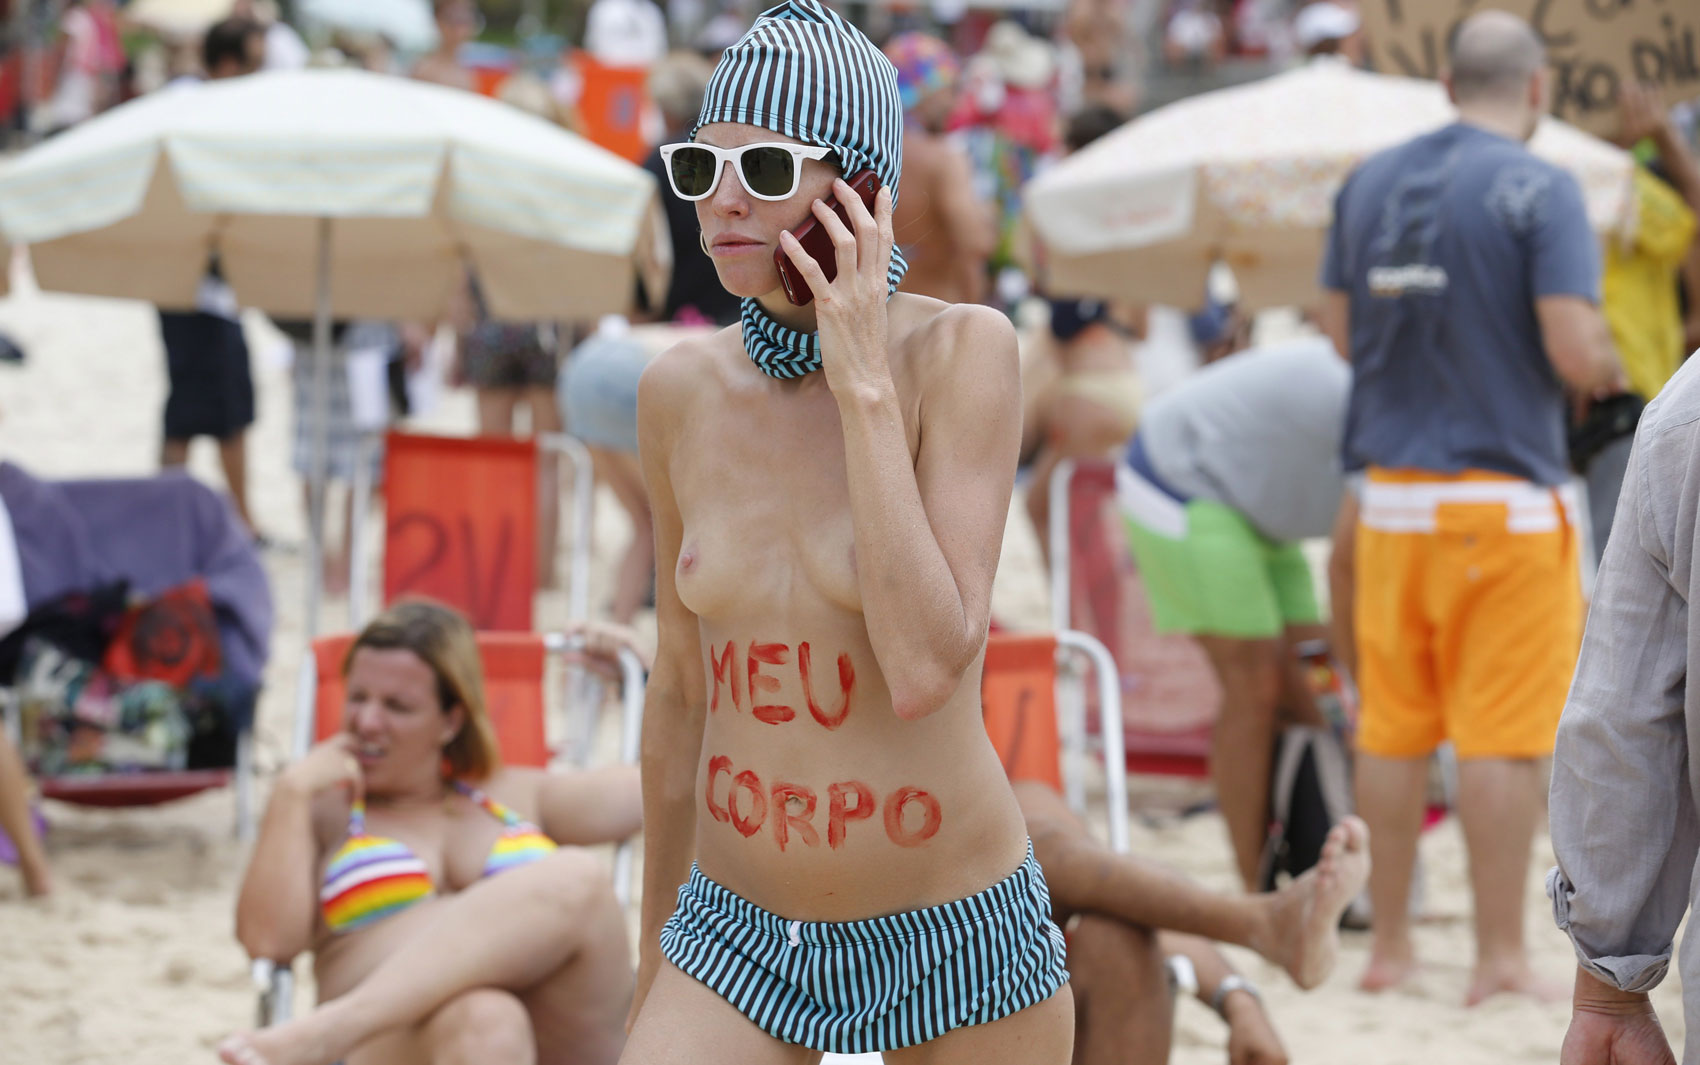 Manifestante fala ao celular após escrever as palavras "meu corpo" na barriga, na praia de Ipanema, no Rio